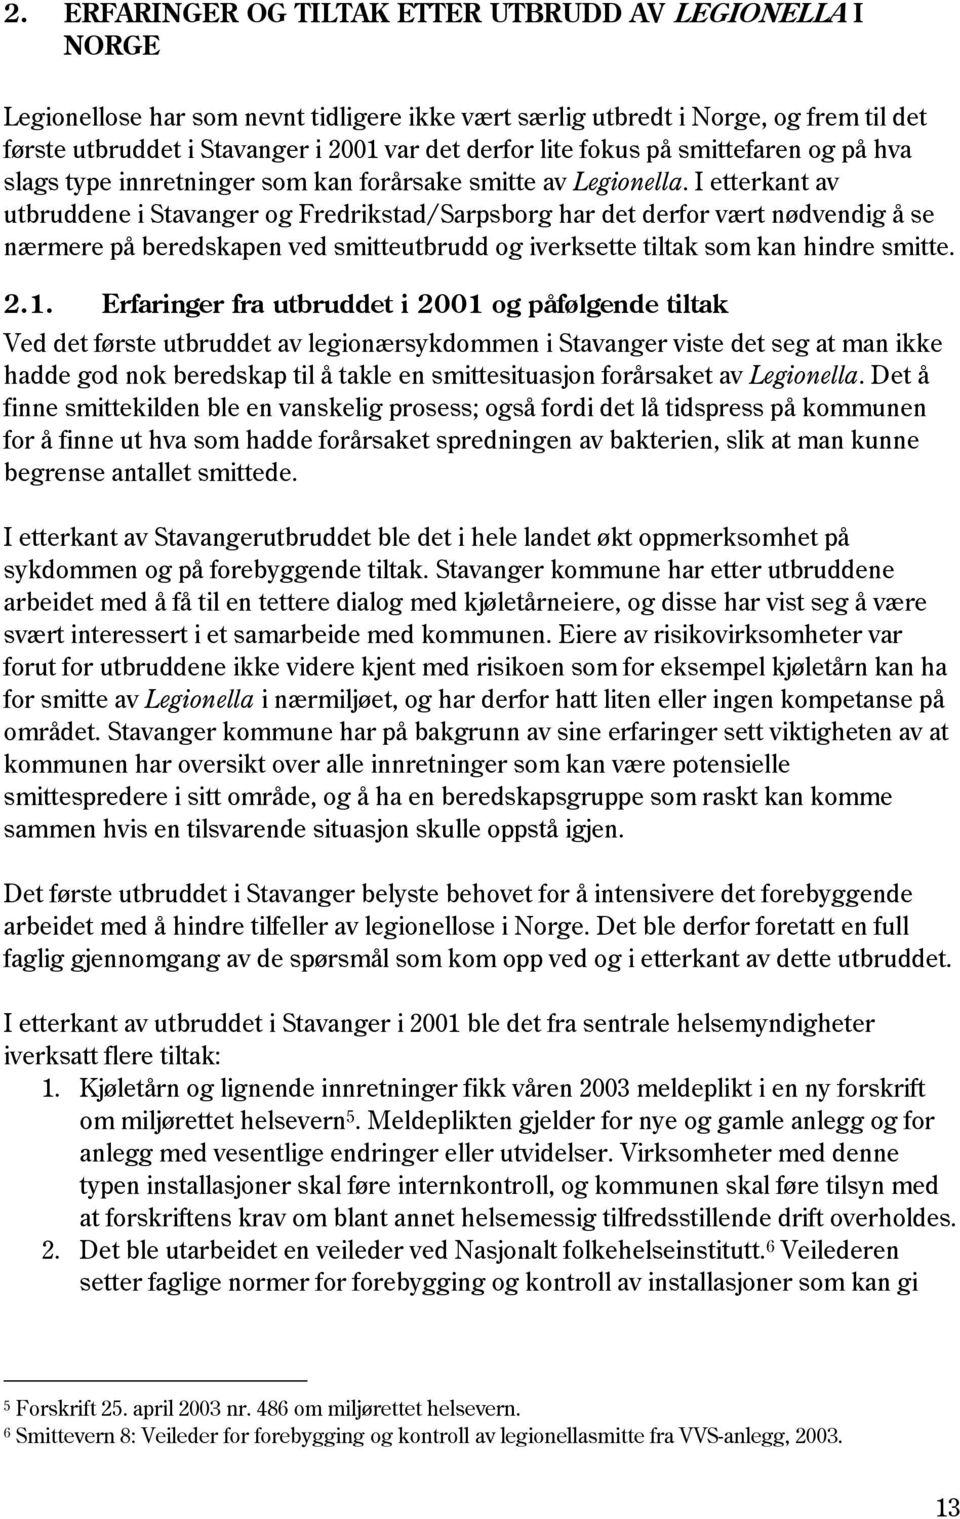 I etterkant av utbruddene i Stavanger og Fredrikstad/Sarpsborg har det derfor vært nødvendig å se nærmere på beredskapen ved smitteutbrudd og iverksette tiltak som kan hindre smitte. 2.1.